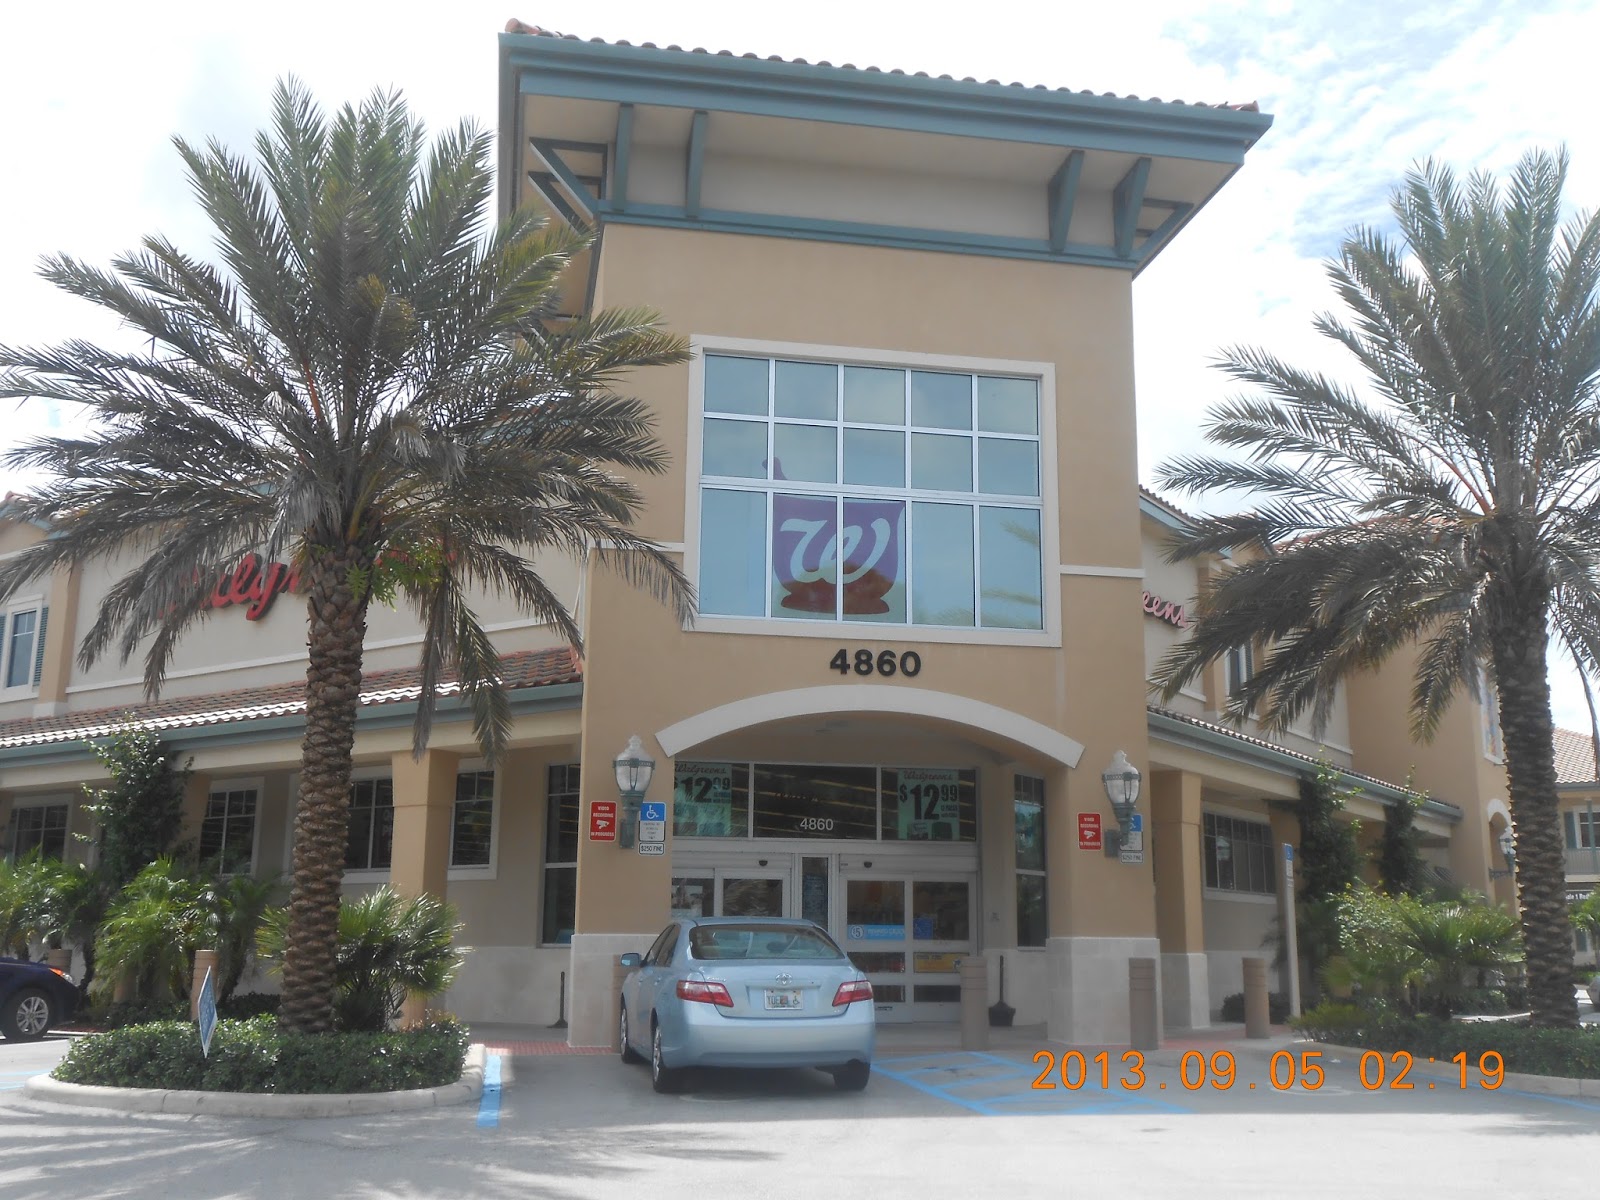 Wags World Walgreens Donald Ross Central Palm Beach Gardens Fl